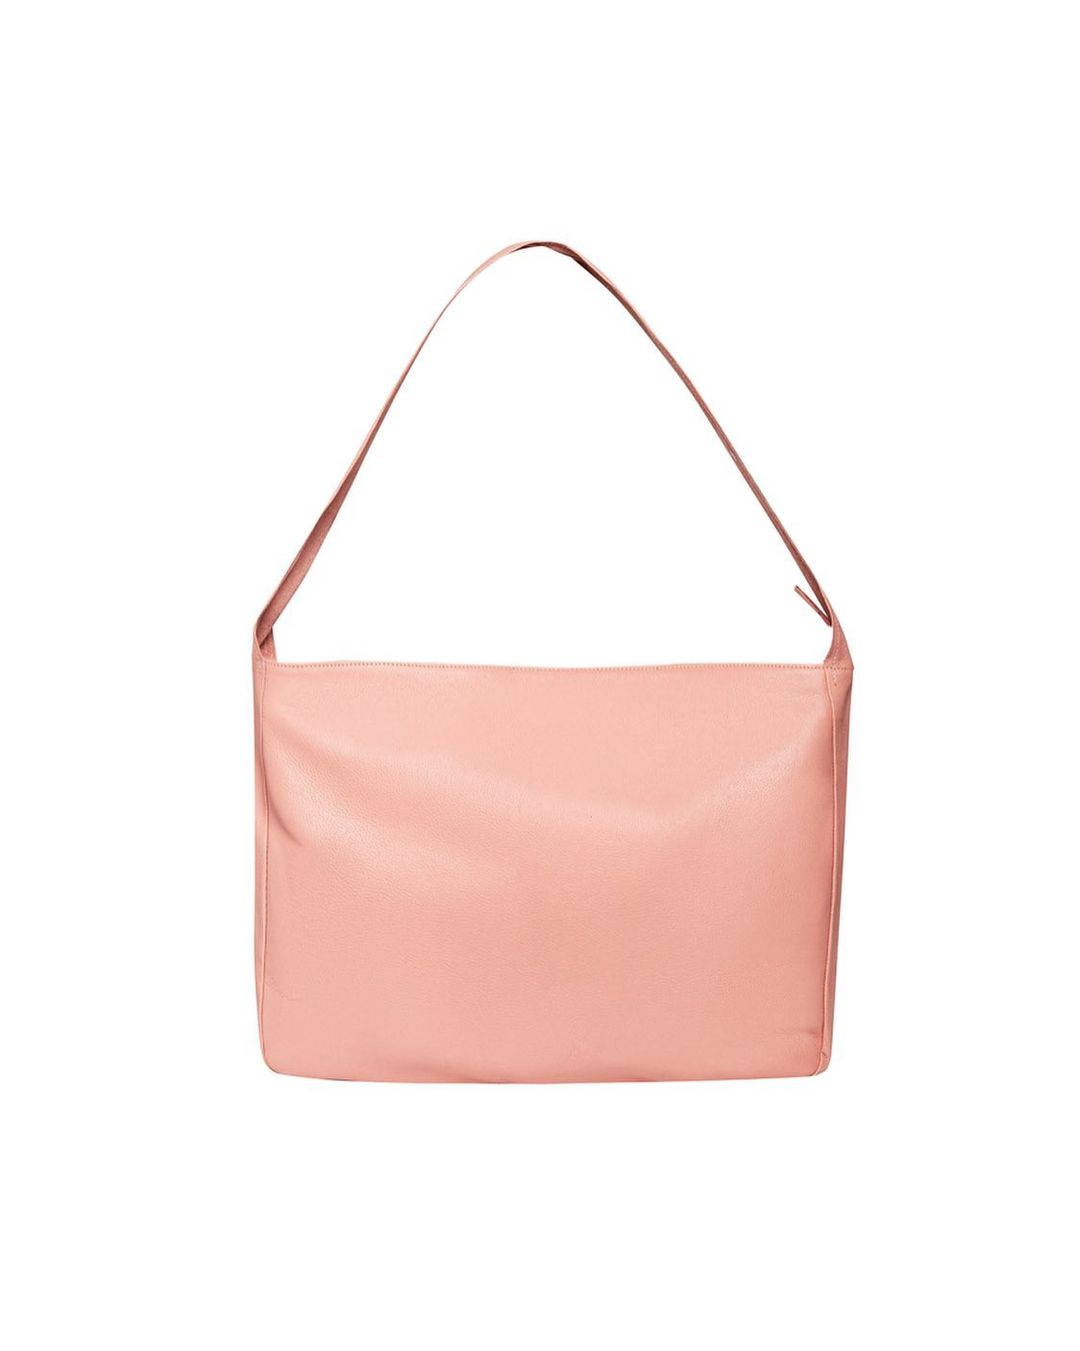 inno-messenger-bag-pink-NS2s-STUDIO-astoud